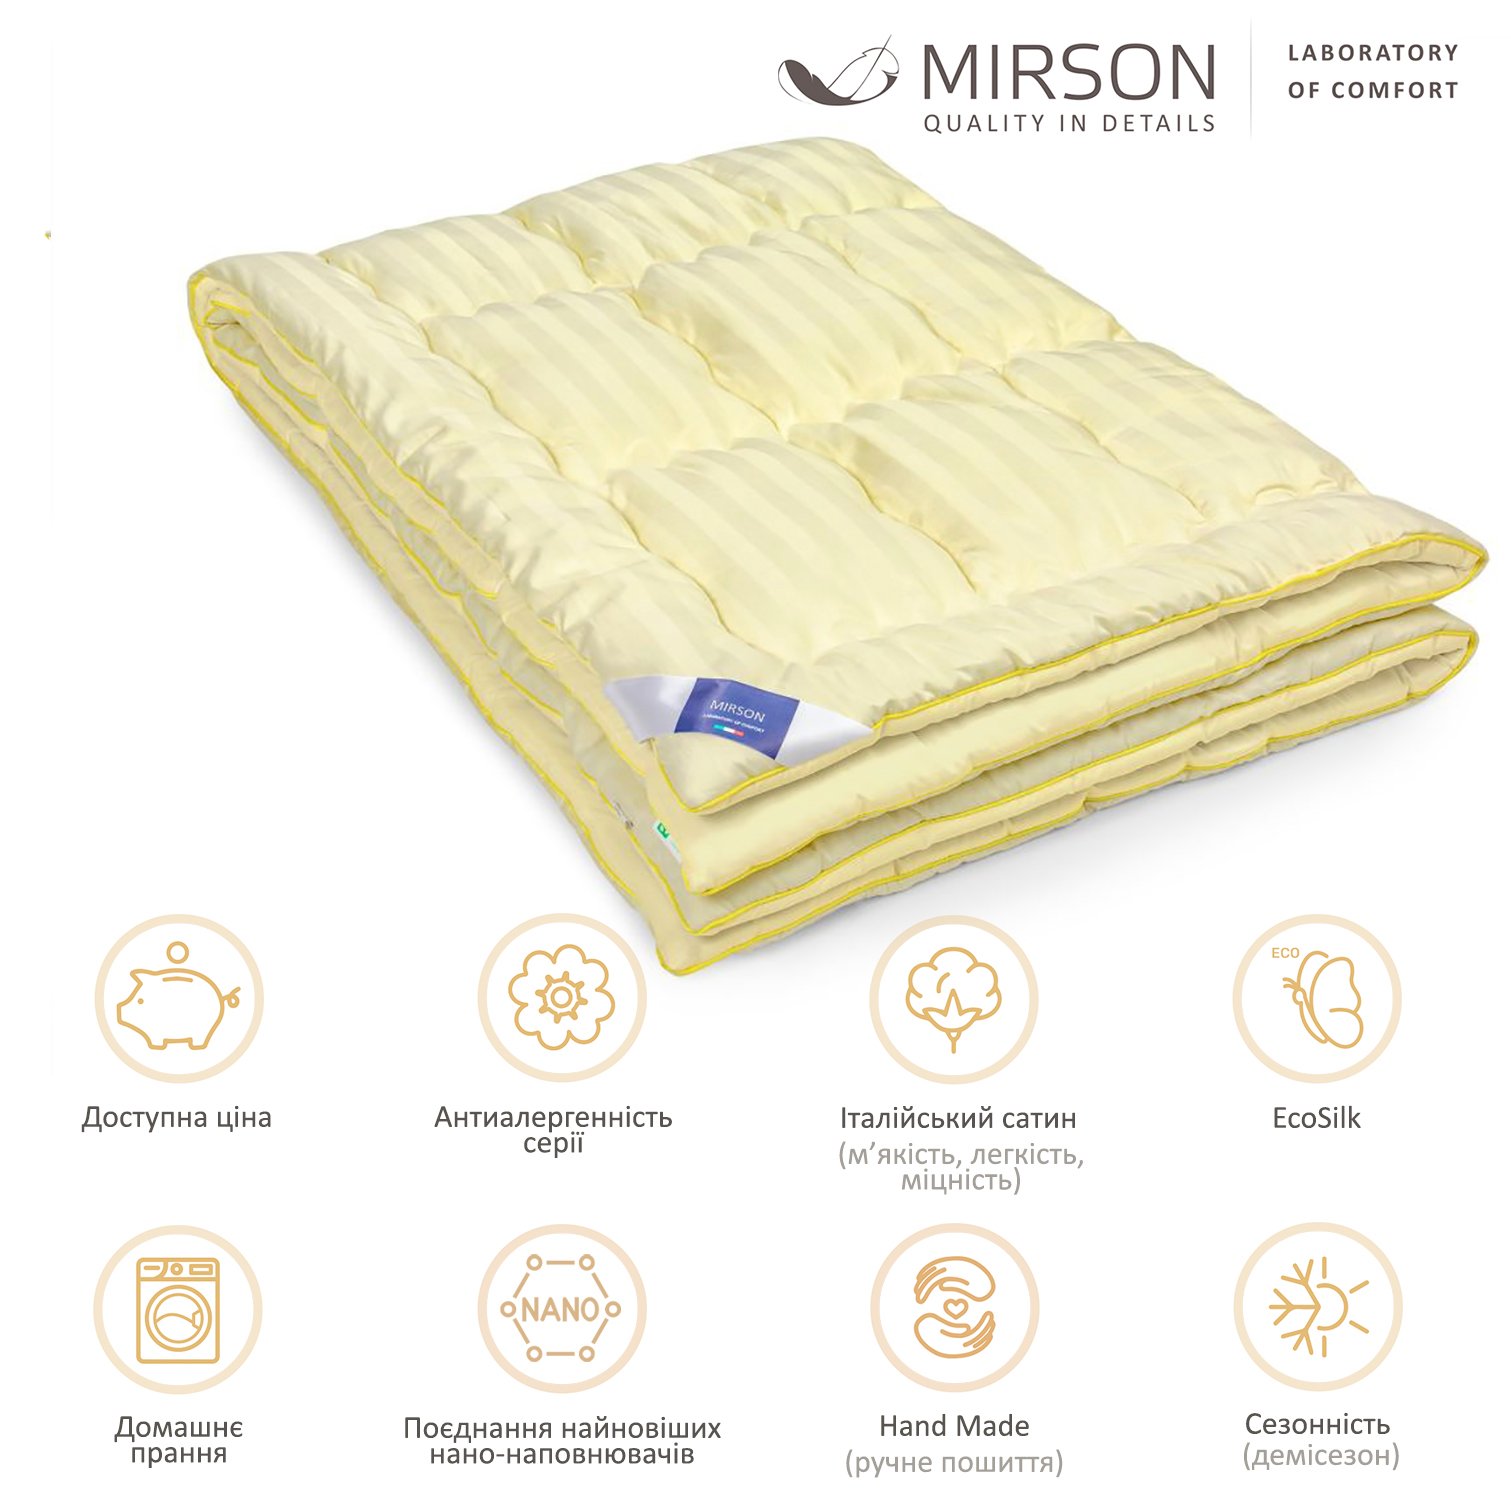 Одеяло антиаллергенное MirSon Carmela Hand Made EcoSilk №065, демисезонное, 200x220 см, светло-желтое - фото 4